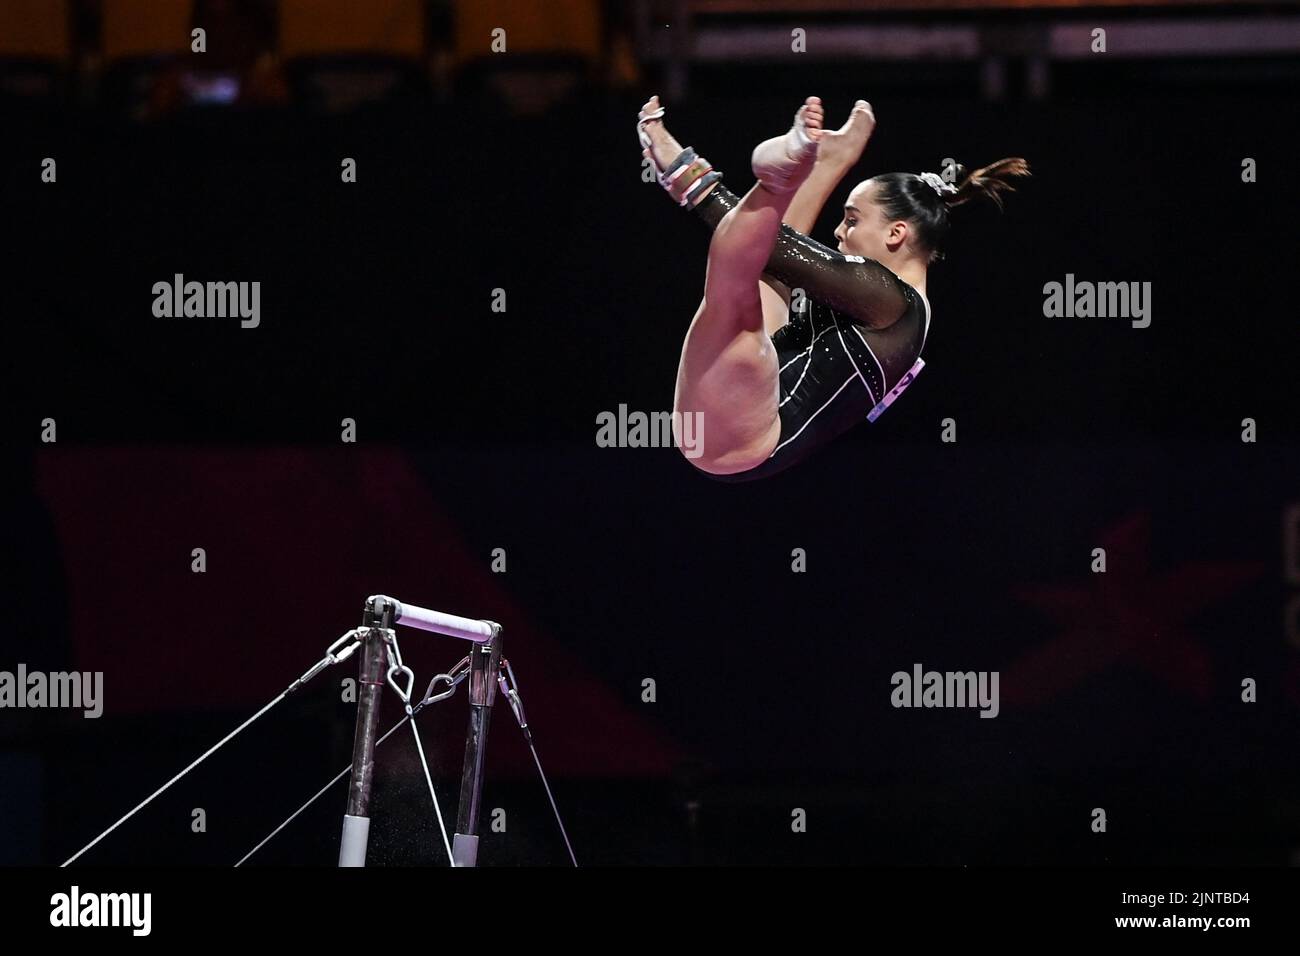 Alba Petisco (Espagne). Championnats d'Europe Munich 2022 : gymnastique artistique, finale de l'équipe féminine Banque D'Images